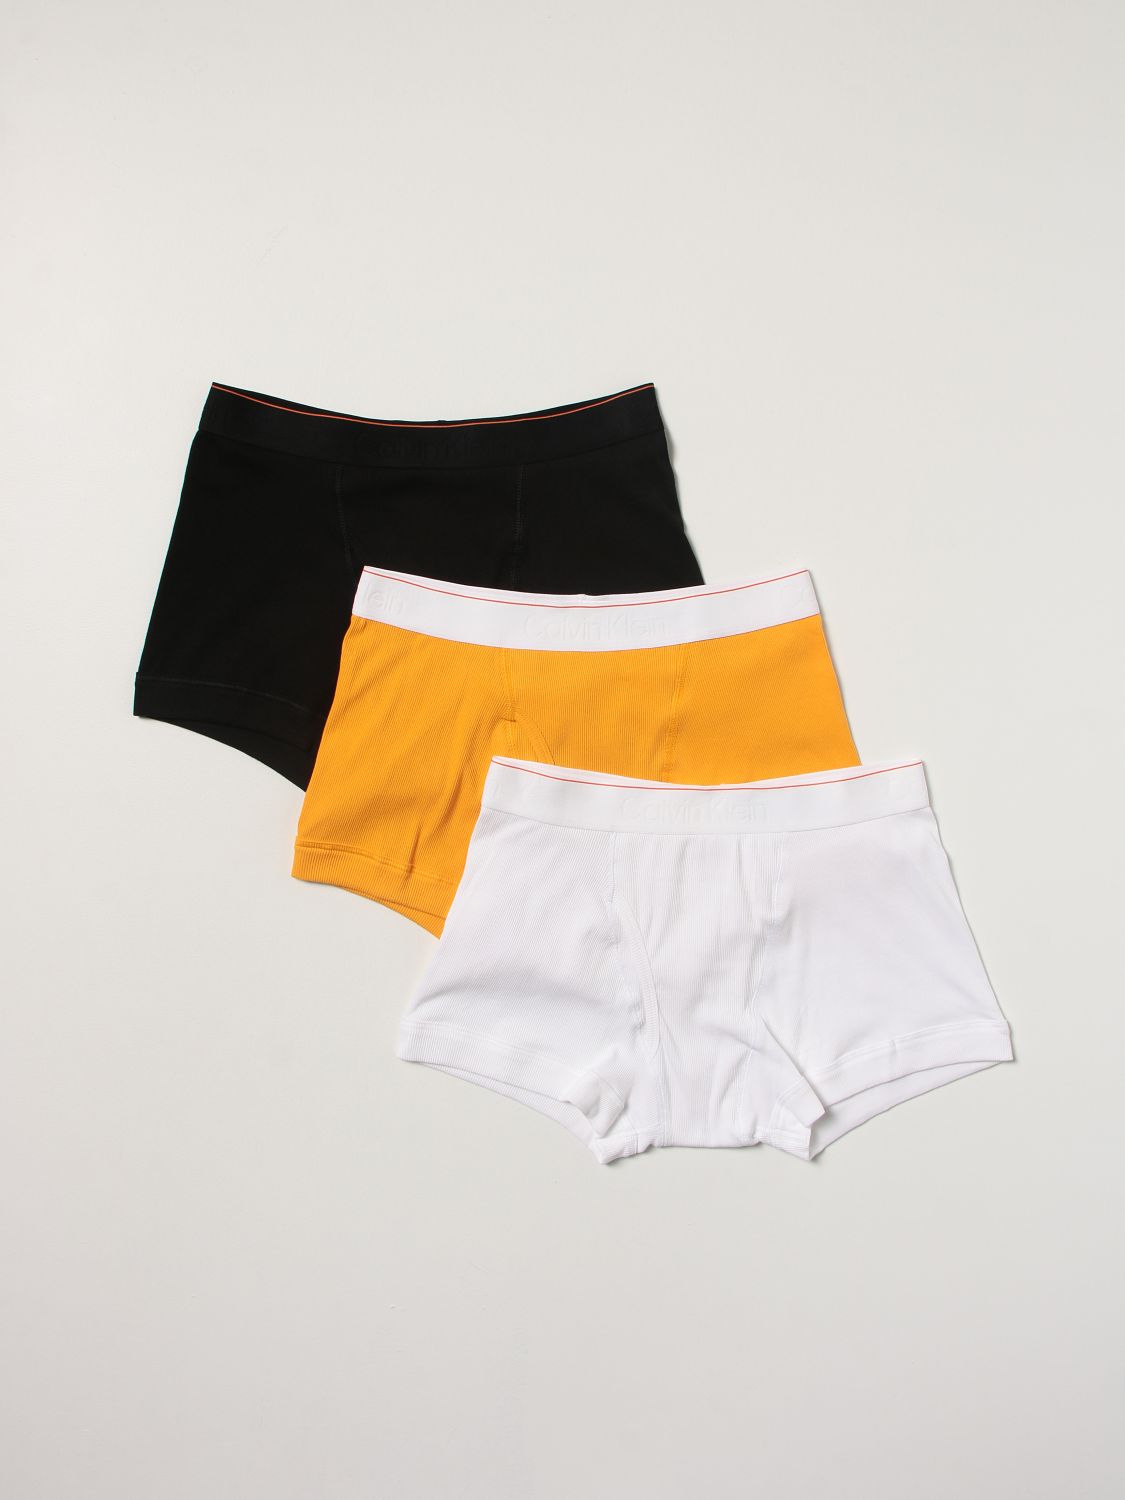 Intimo Heron Preston For Calvin Klein: Set 3 boxer Orange 2.0 Heron Preston x Calvin Klein con logo nero 1